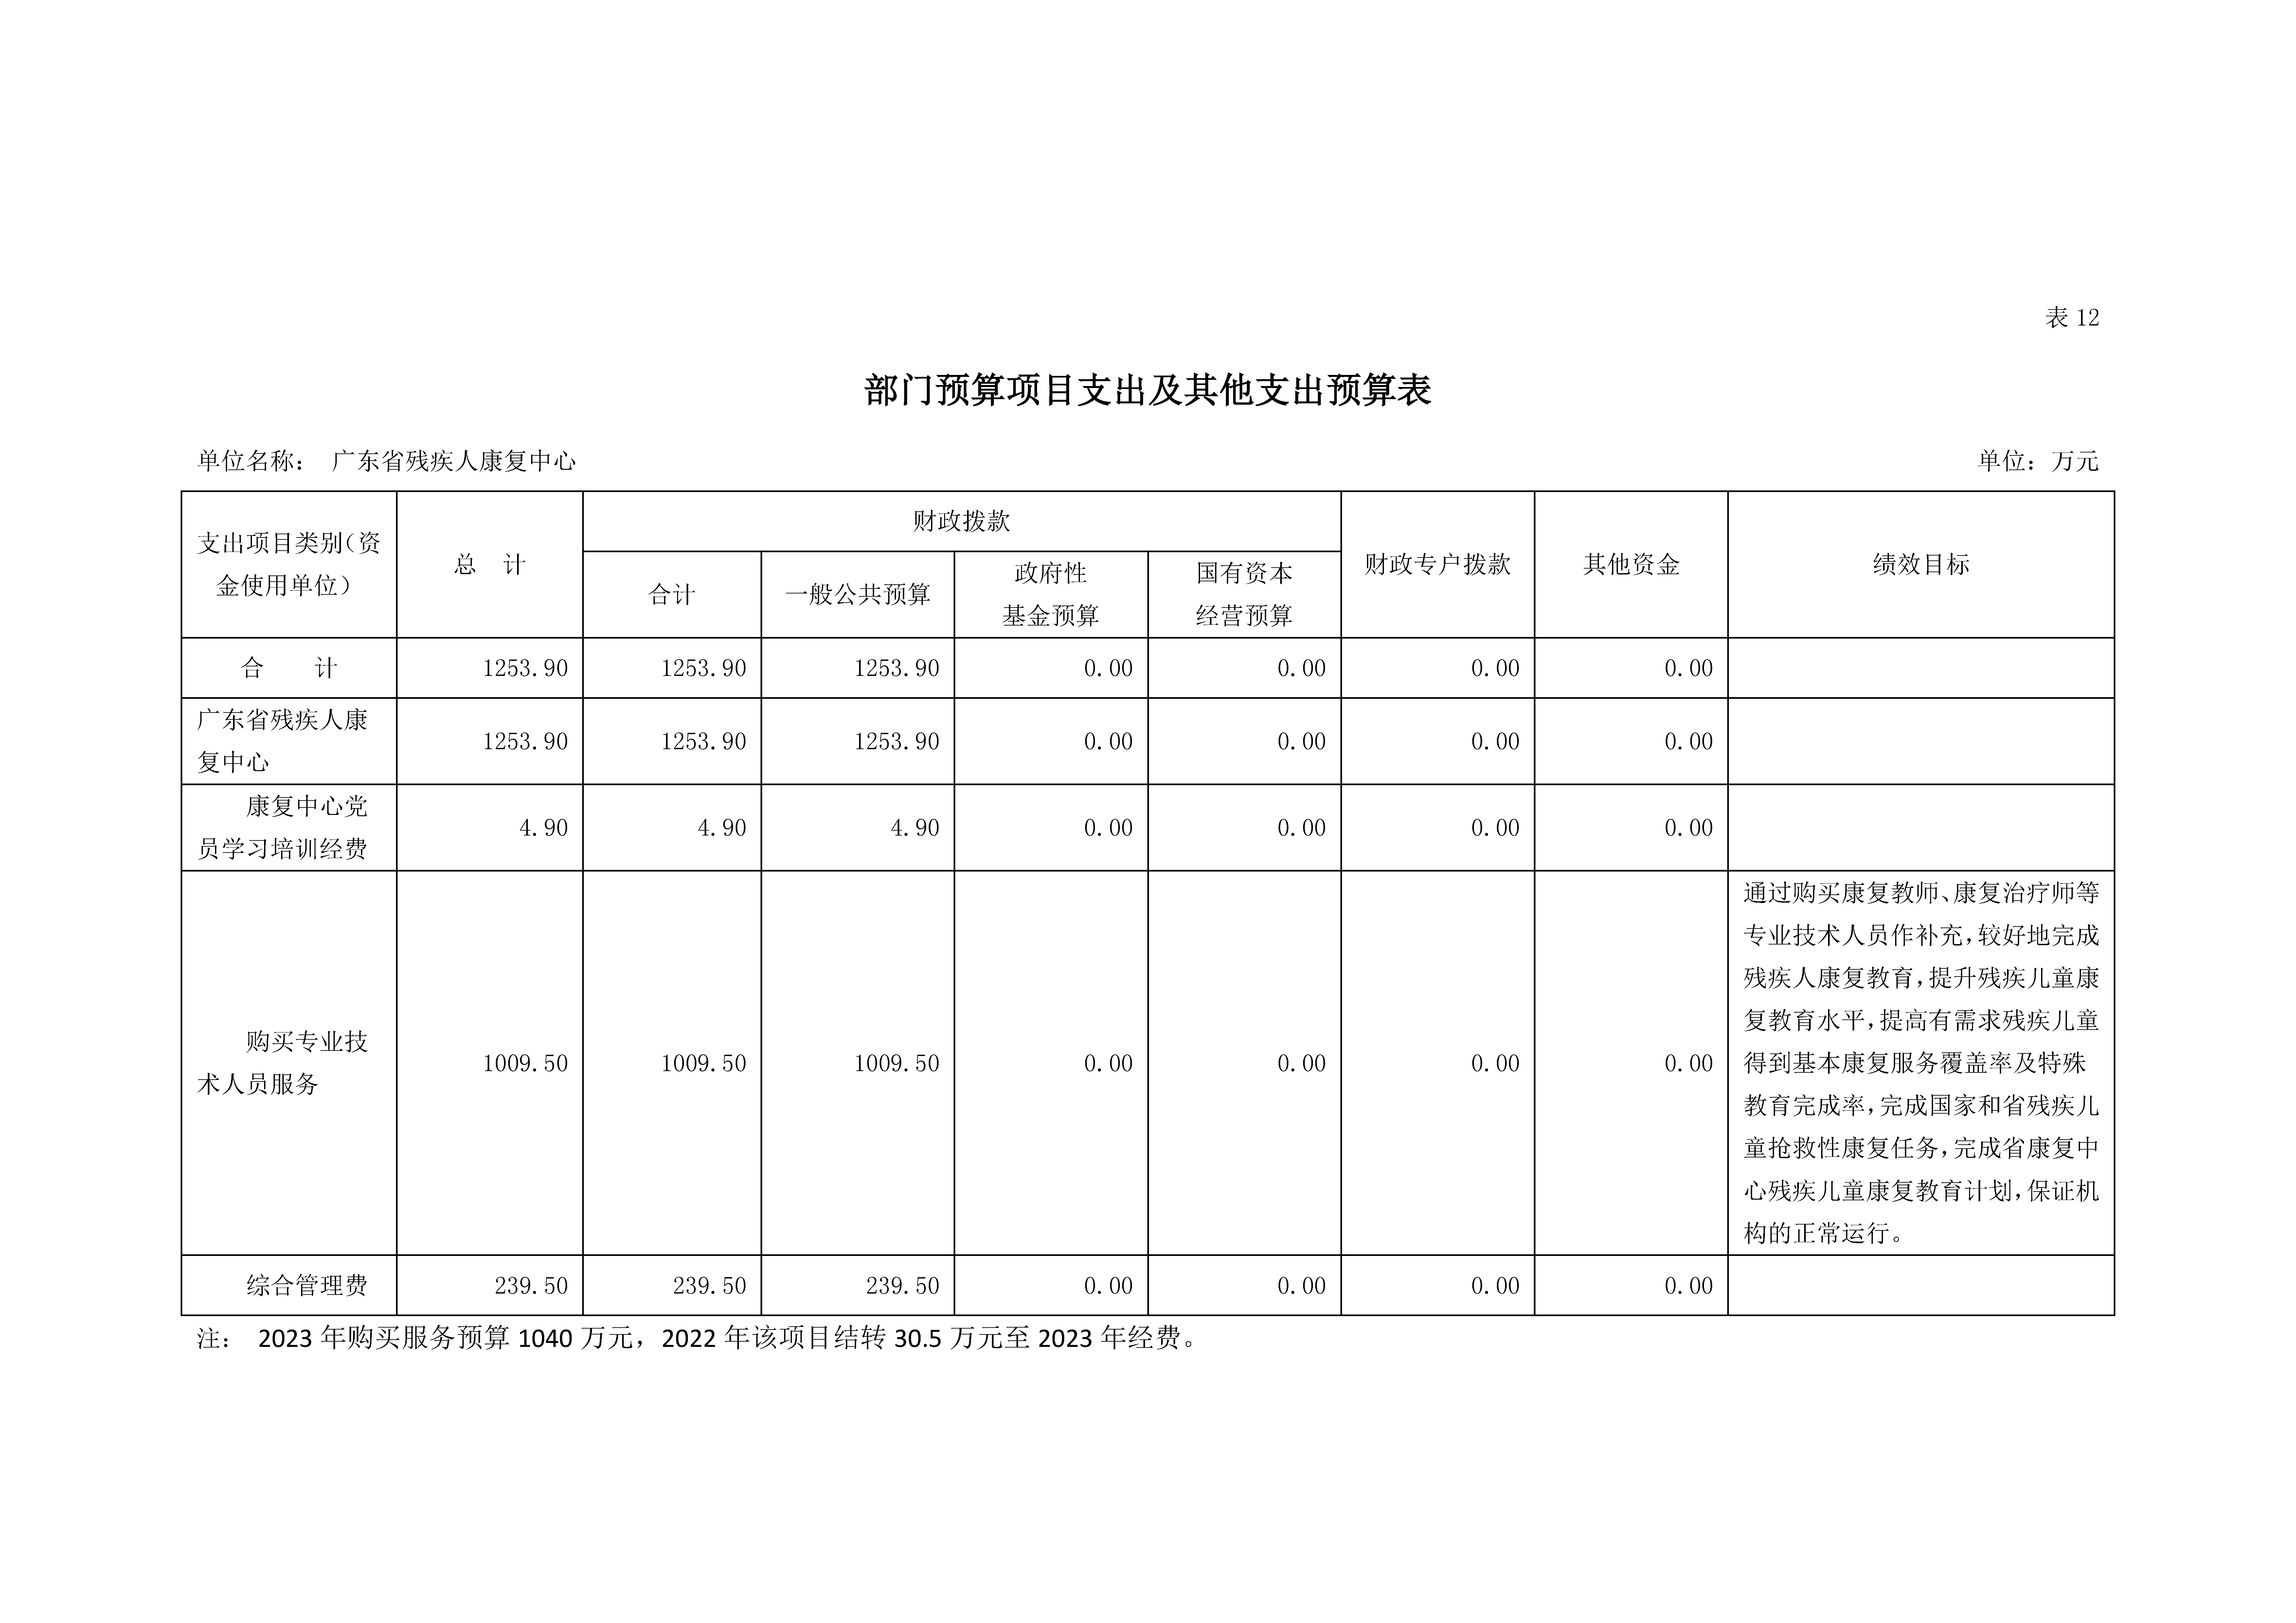 2023年广东省残疾人康复中心部门预算_页面_21.jpg